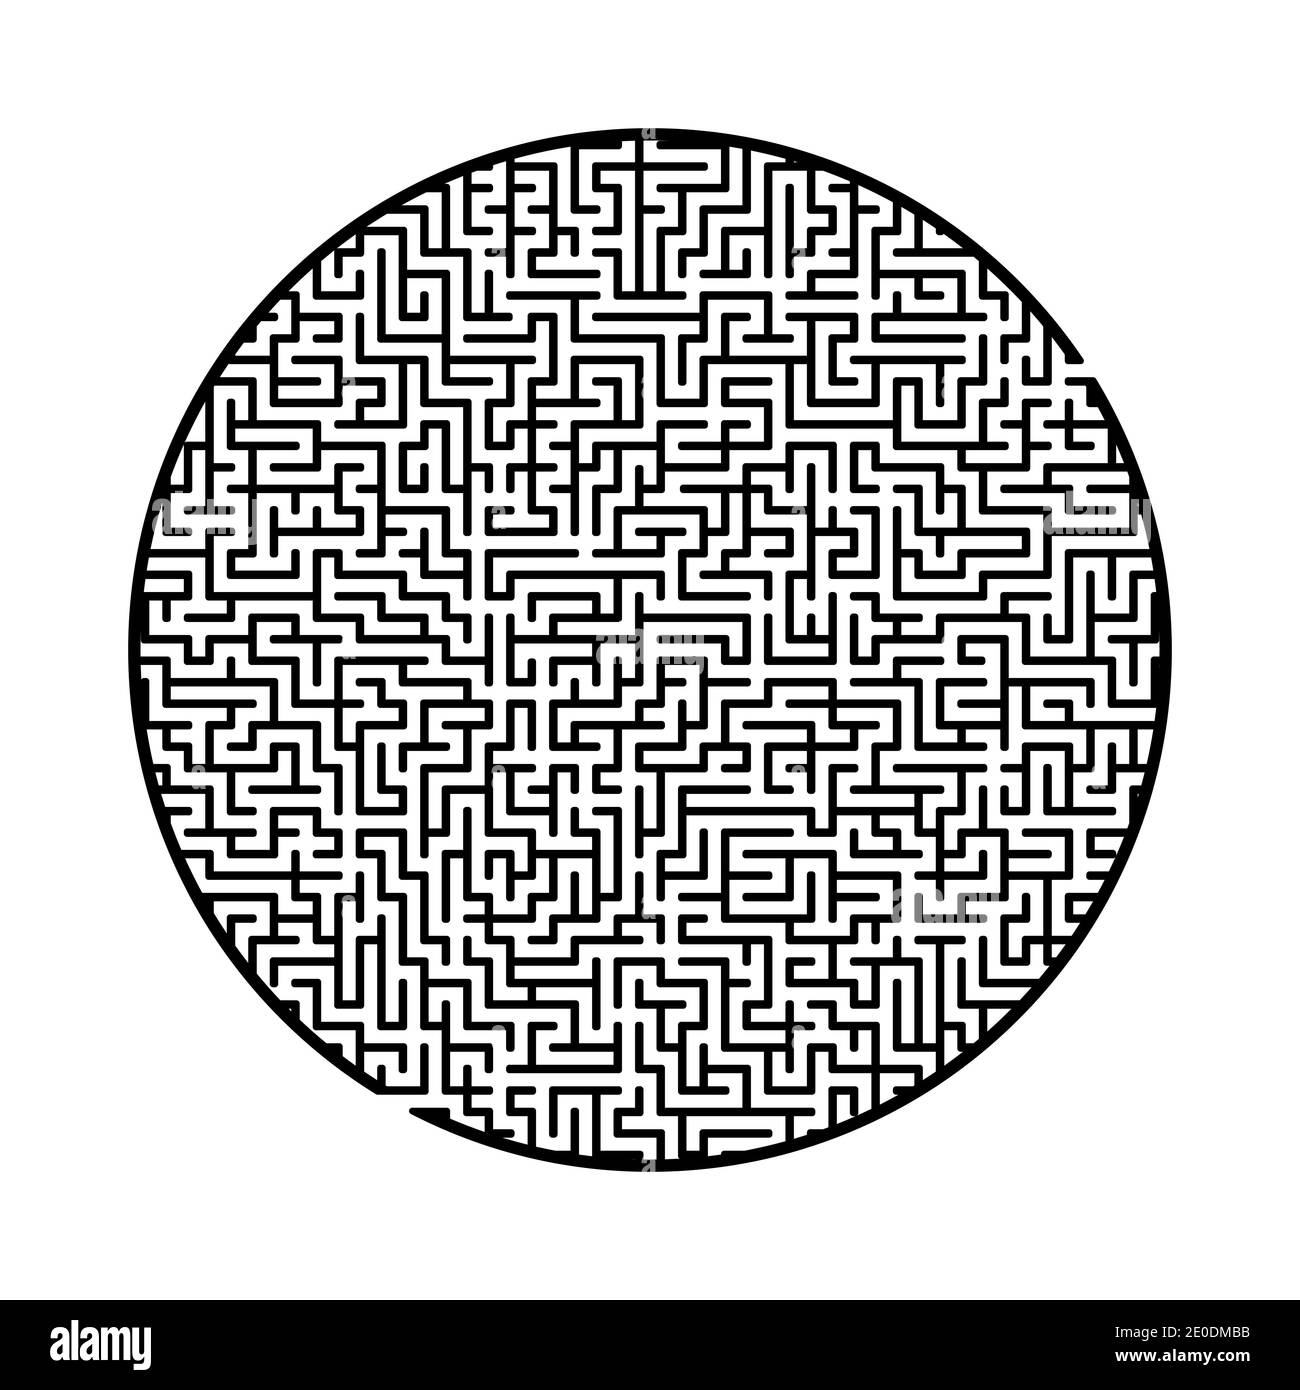 Schwieriges großes Labyrinth. Spiel für Kinder und Erwachsene. Puzzle für  Kinder. Labyrinth-Rätsel. Finden Sie den richtigen Weg. Flache Vektorgrafik  Stock-Vektorgrafik - Alamy